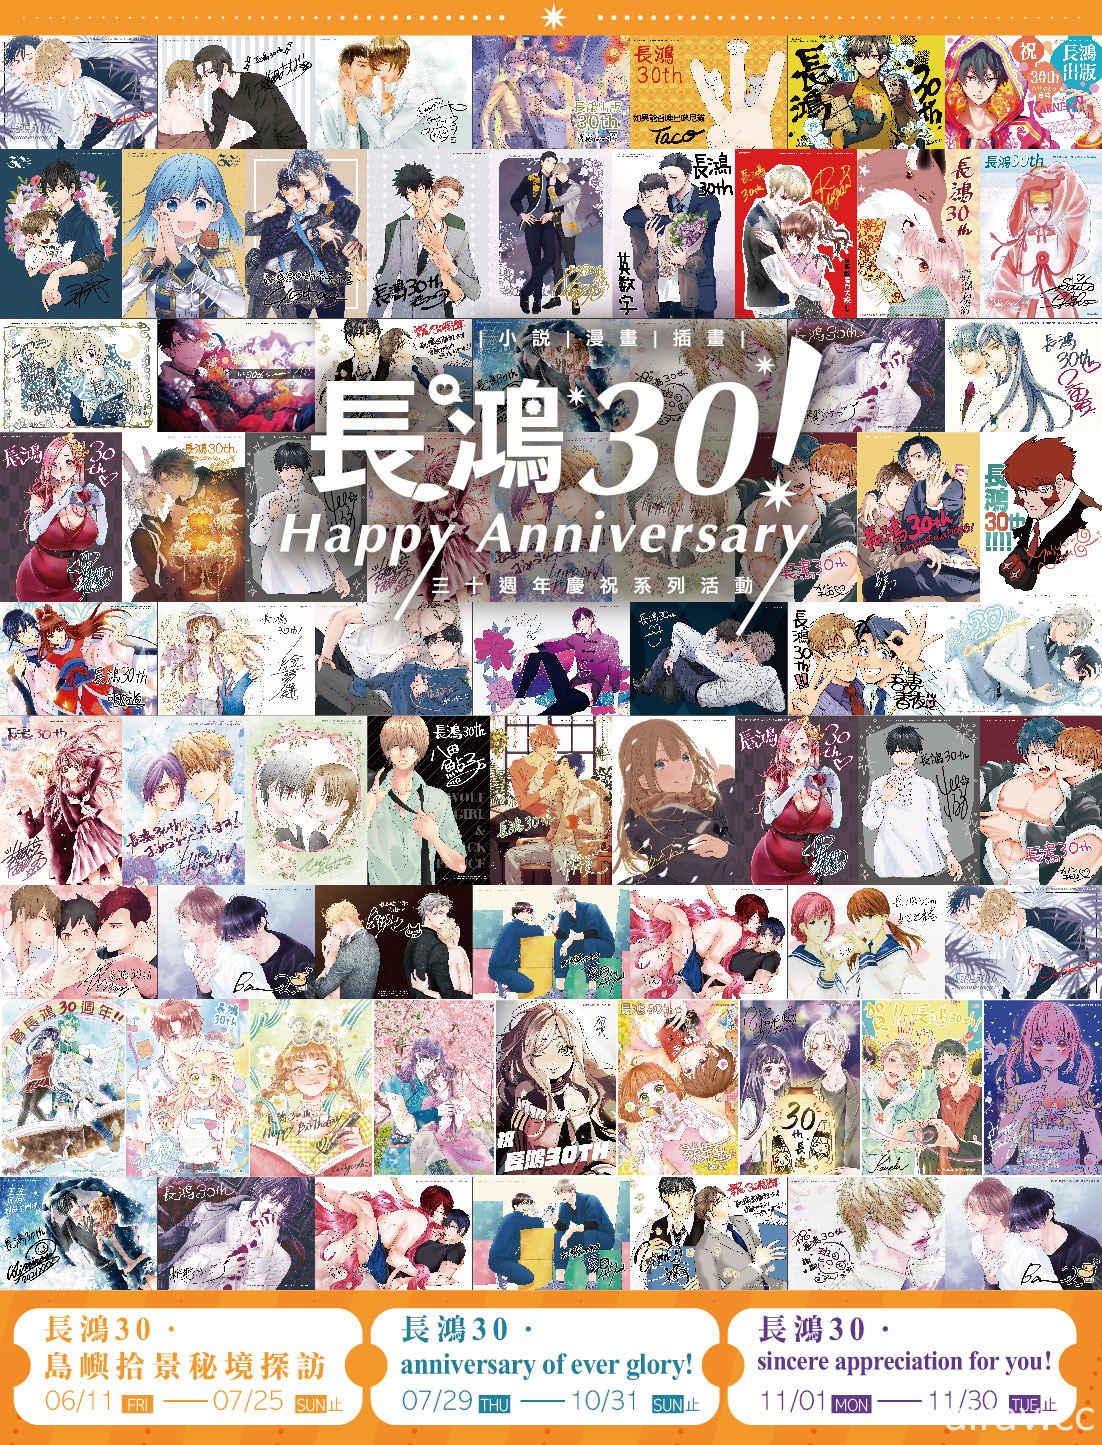 長鴻 30 週年系列慶祝活動系列新情報公開 集結 52 位日本漫畫家共同慶賀